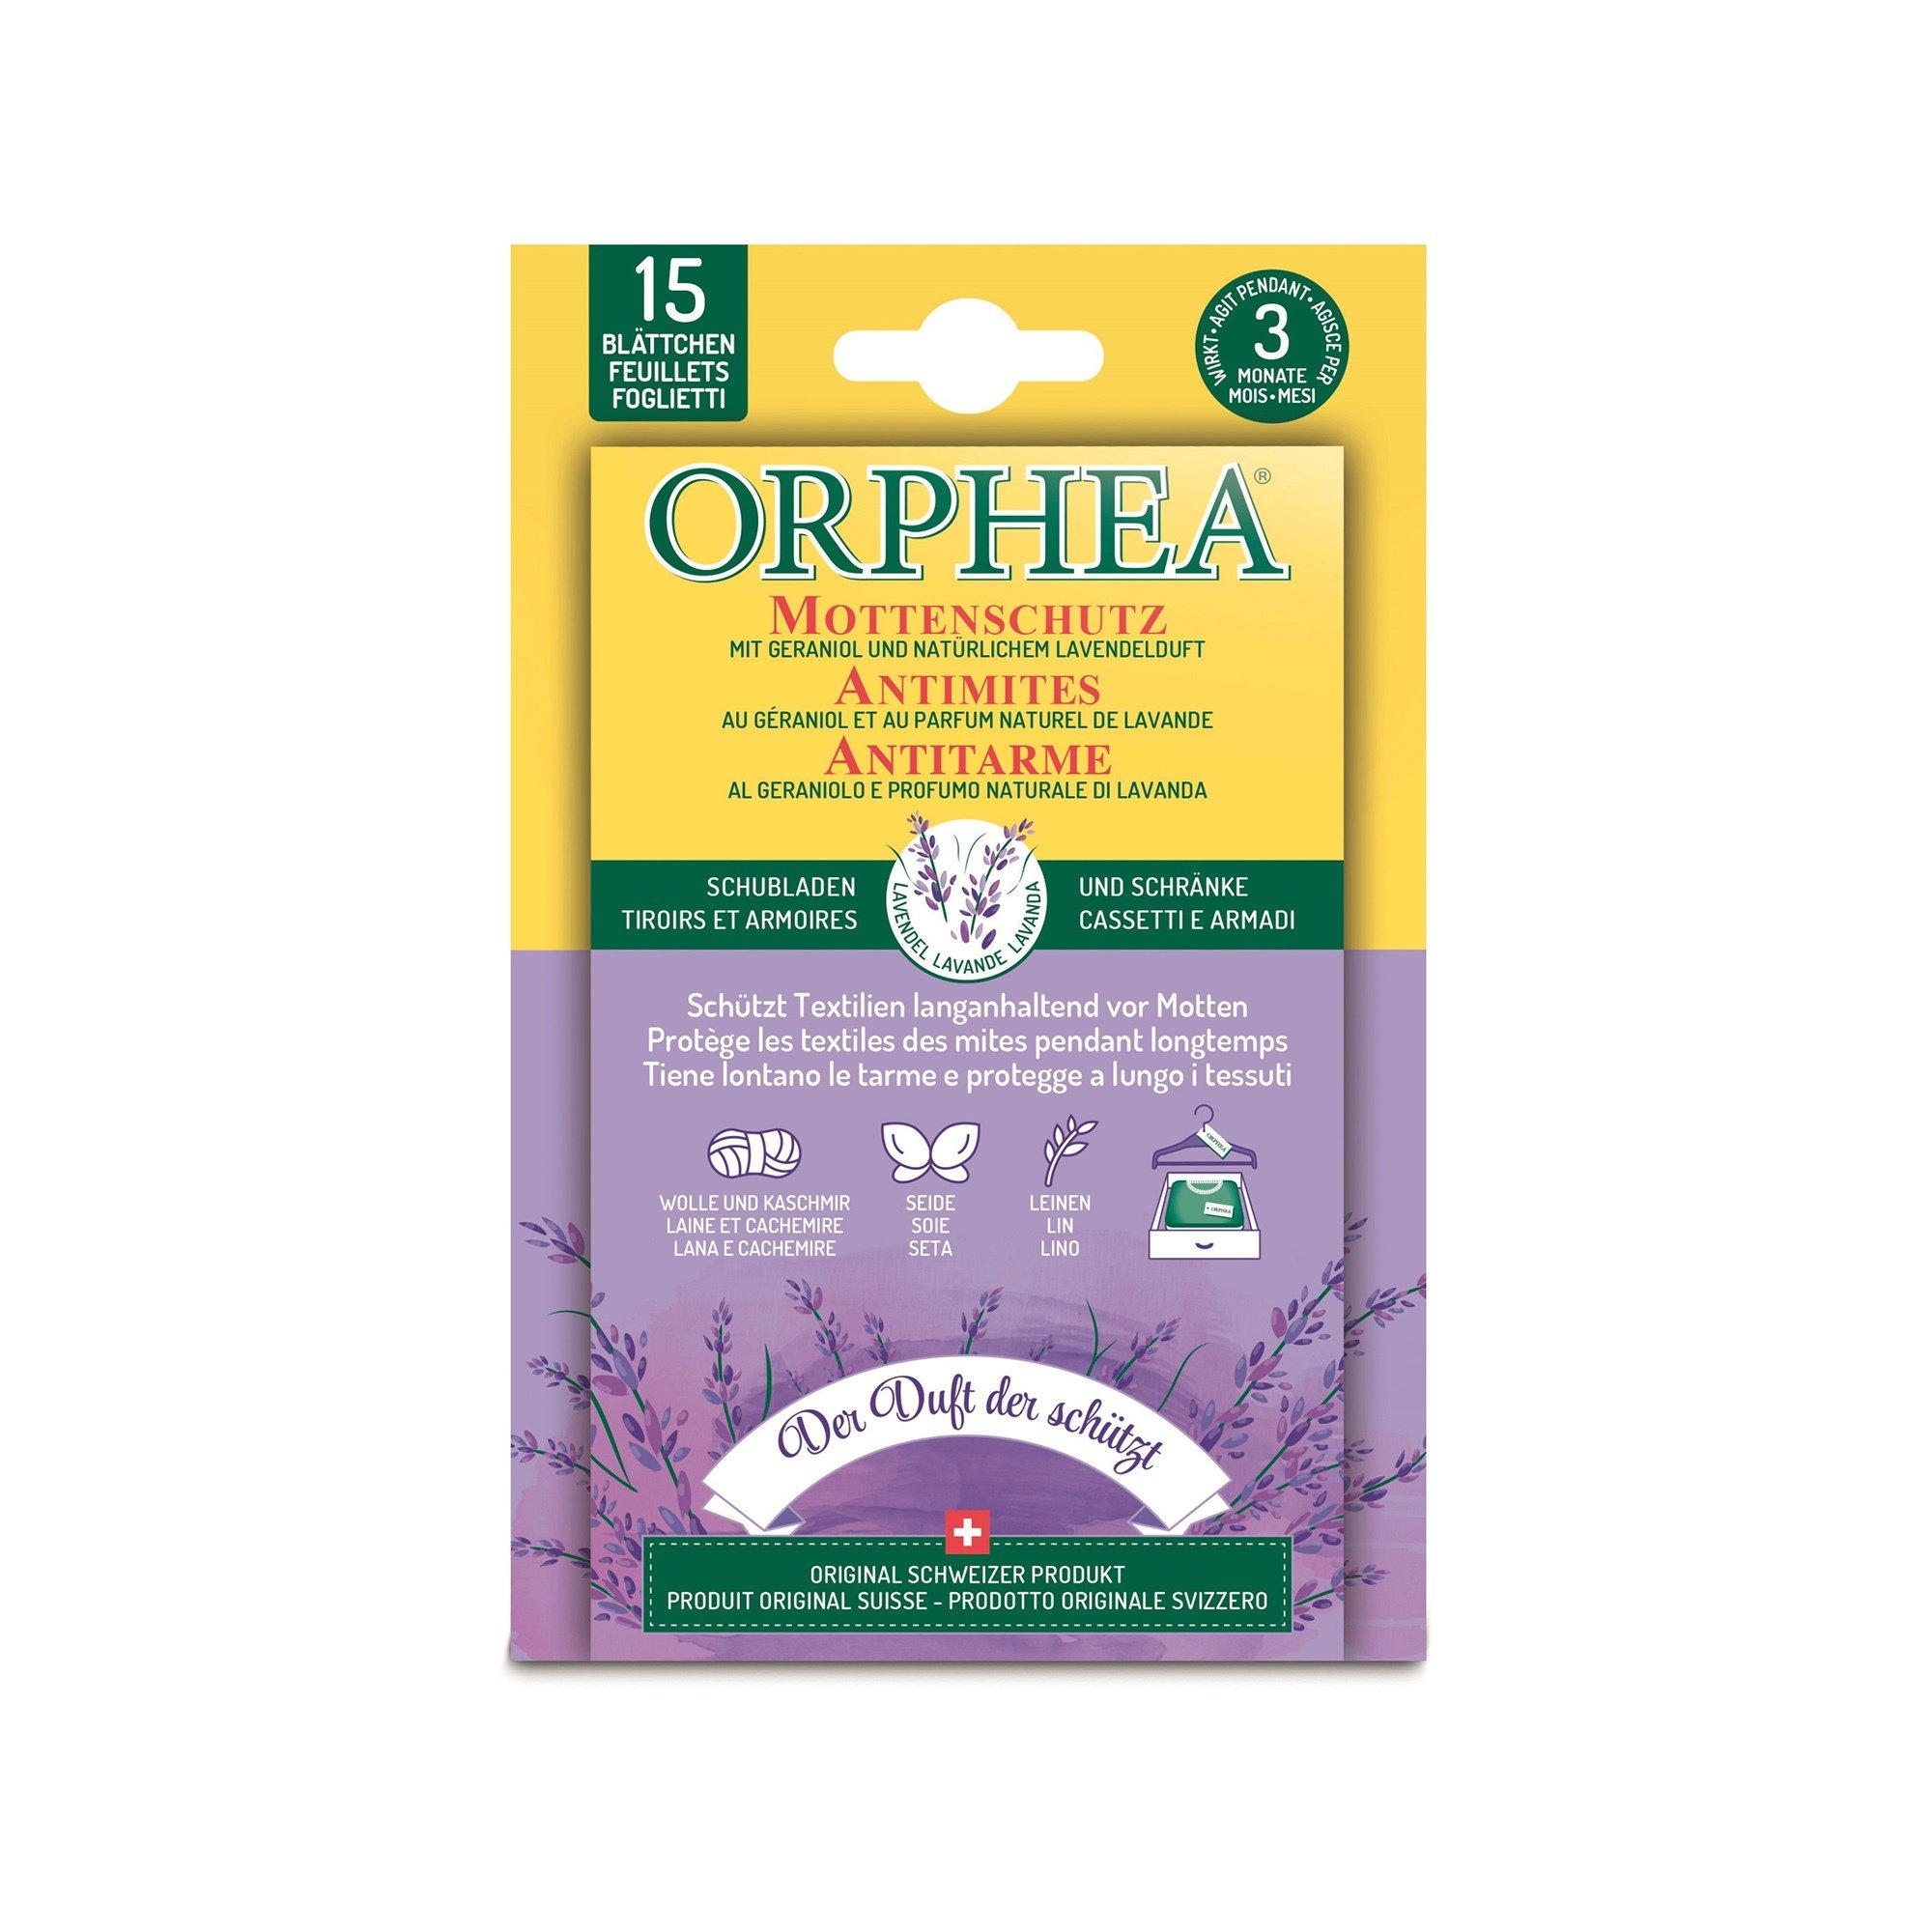 ORPHEA Mottenschutz Blätter Lavendel 